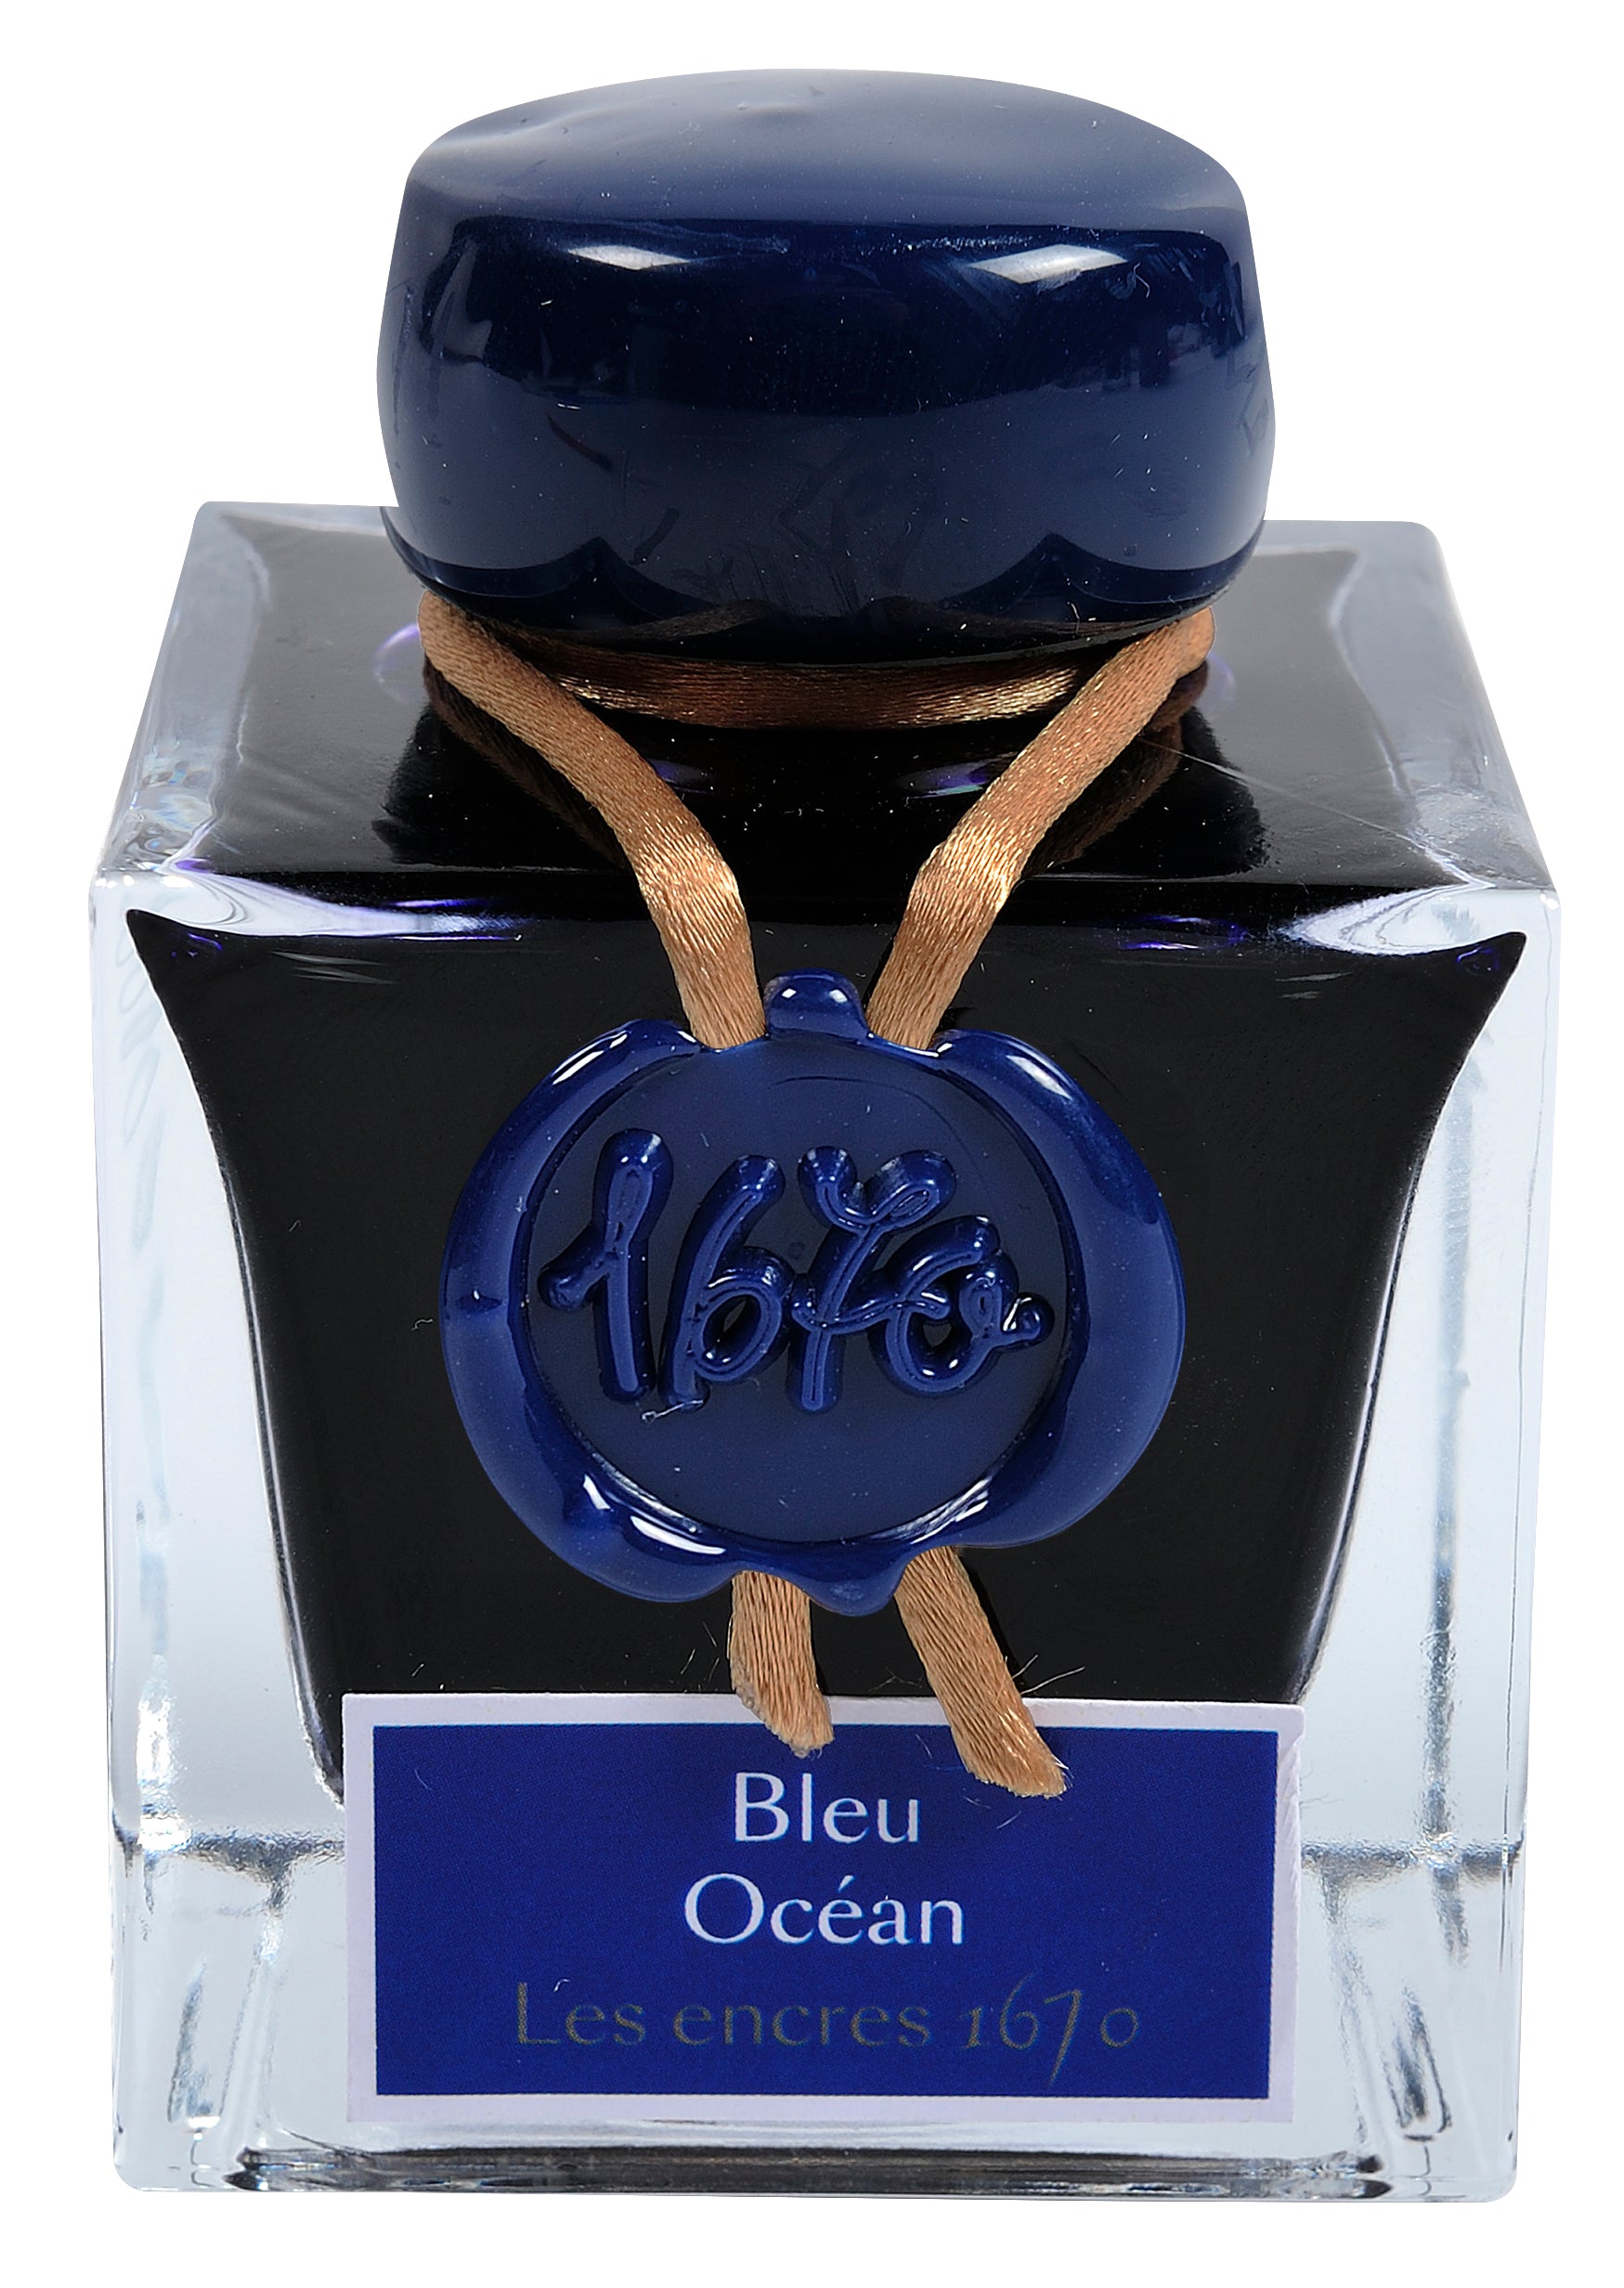 Herbin 1670 - Bleu Ocean (ozeanblau)